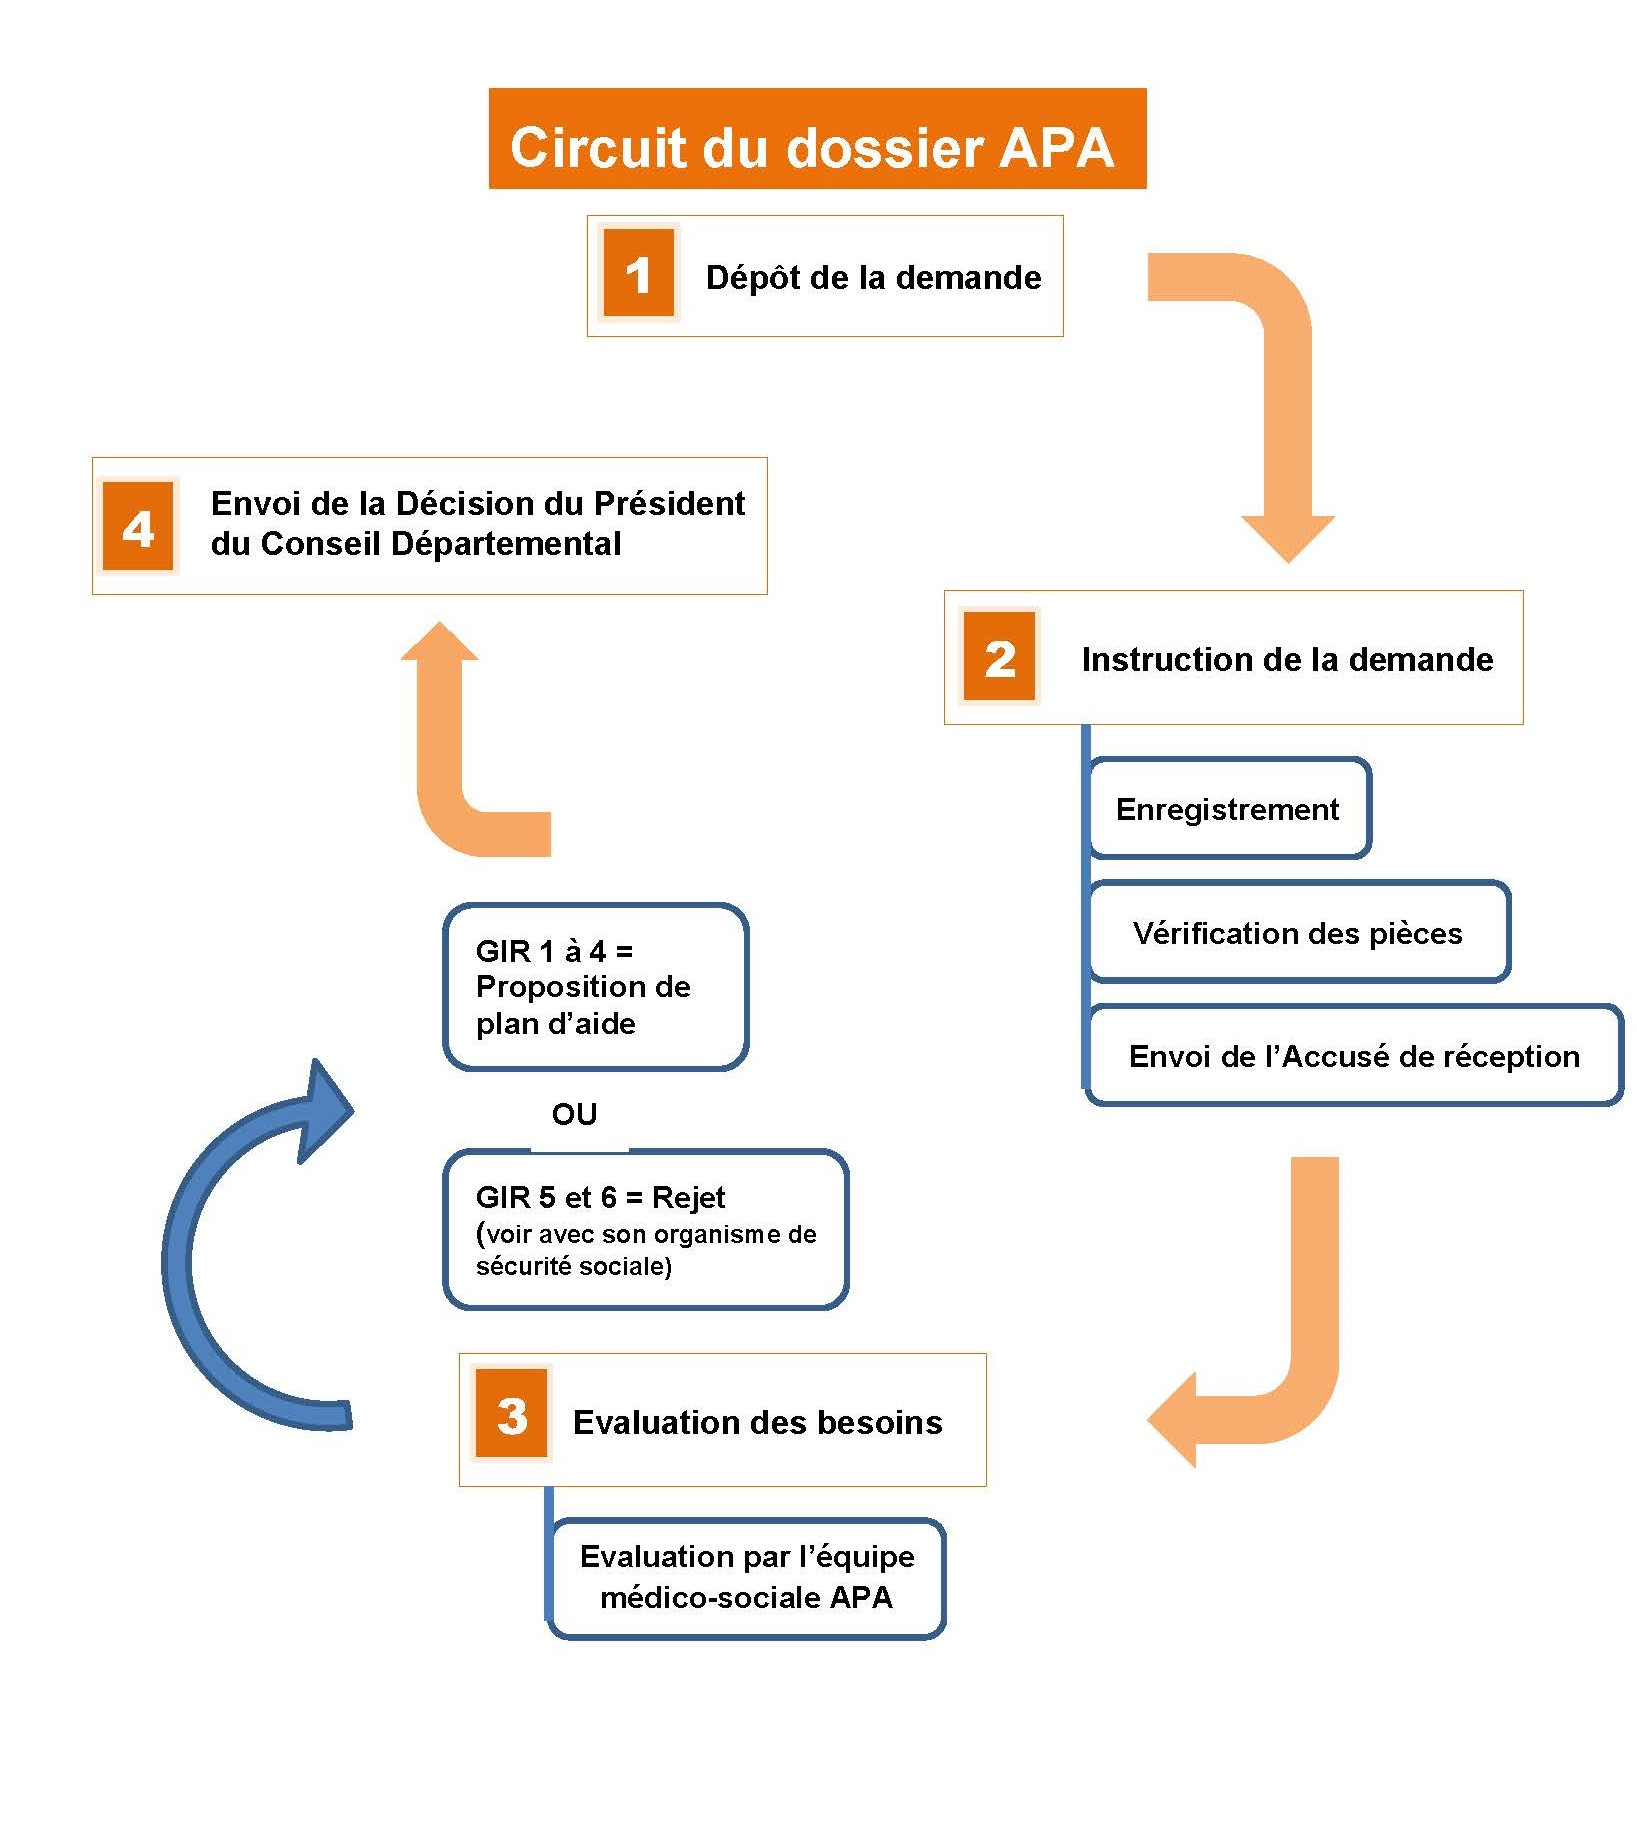 Schéma reprenant les grandes étapes d'une demande APA : 1- Dépôt de la demande /  2- Instruction de la demande / 3- Evaluation de la demande / 4 - Envoi de la décision du Président du Conseil Départemental